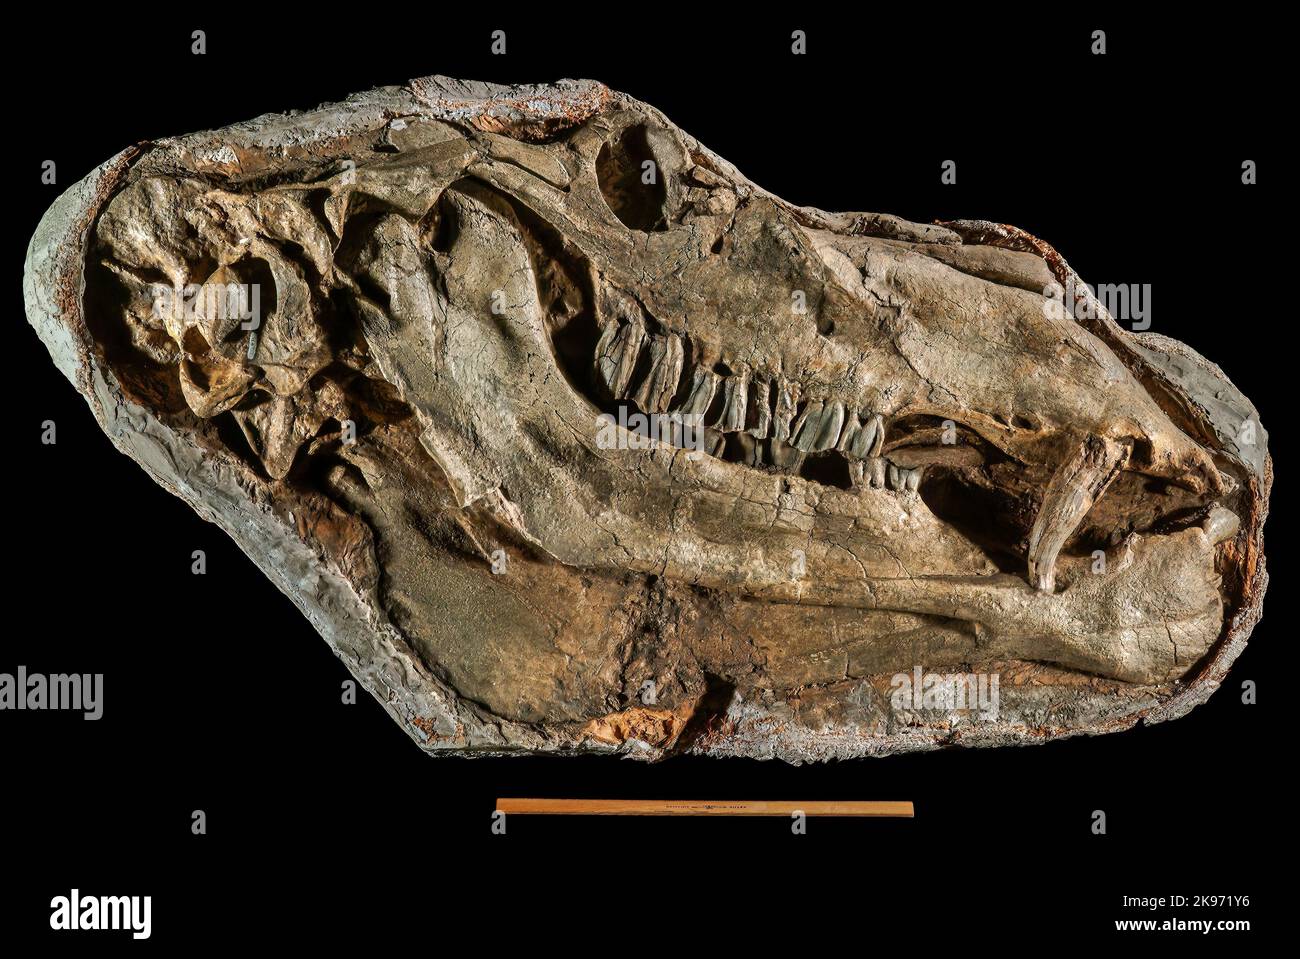 Gigantocamelus ou Titanotylopus, Pliocène supérieur/Pliocène inférieur, Garden Co., Nebraska, Fossil (tête d'environ 3 pieds de long, règle de 12 pouces pour l'échelle) Banque D'Images